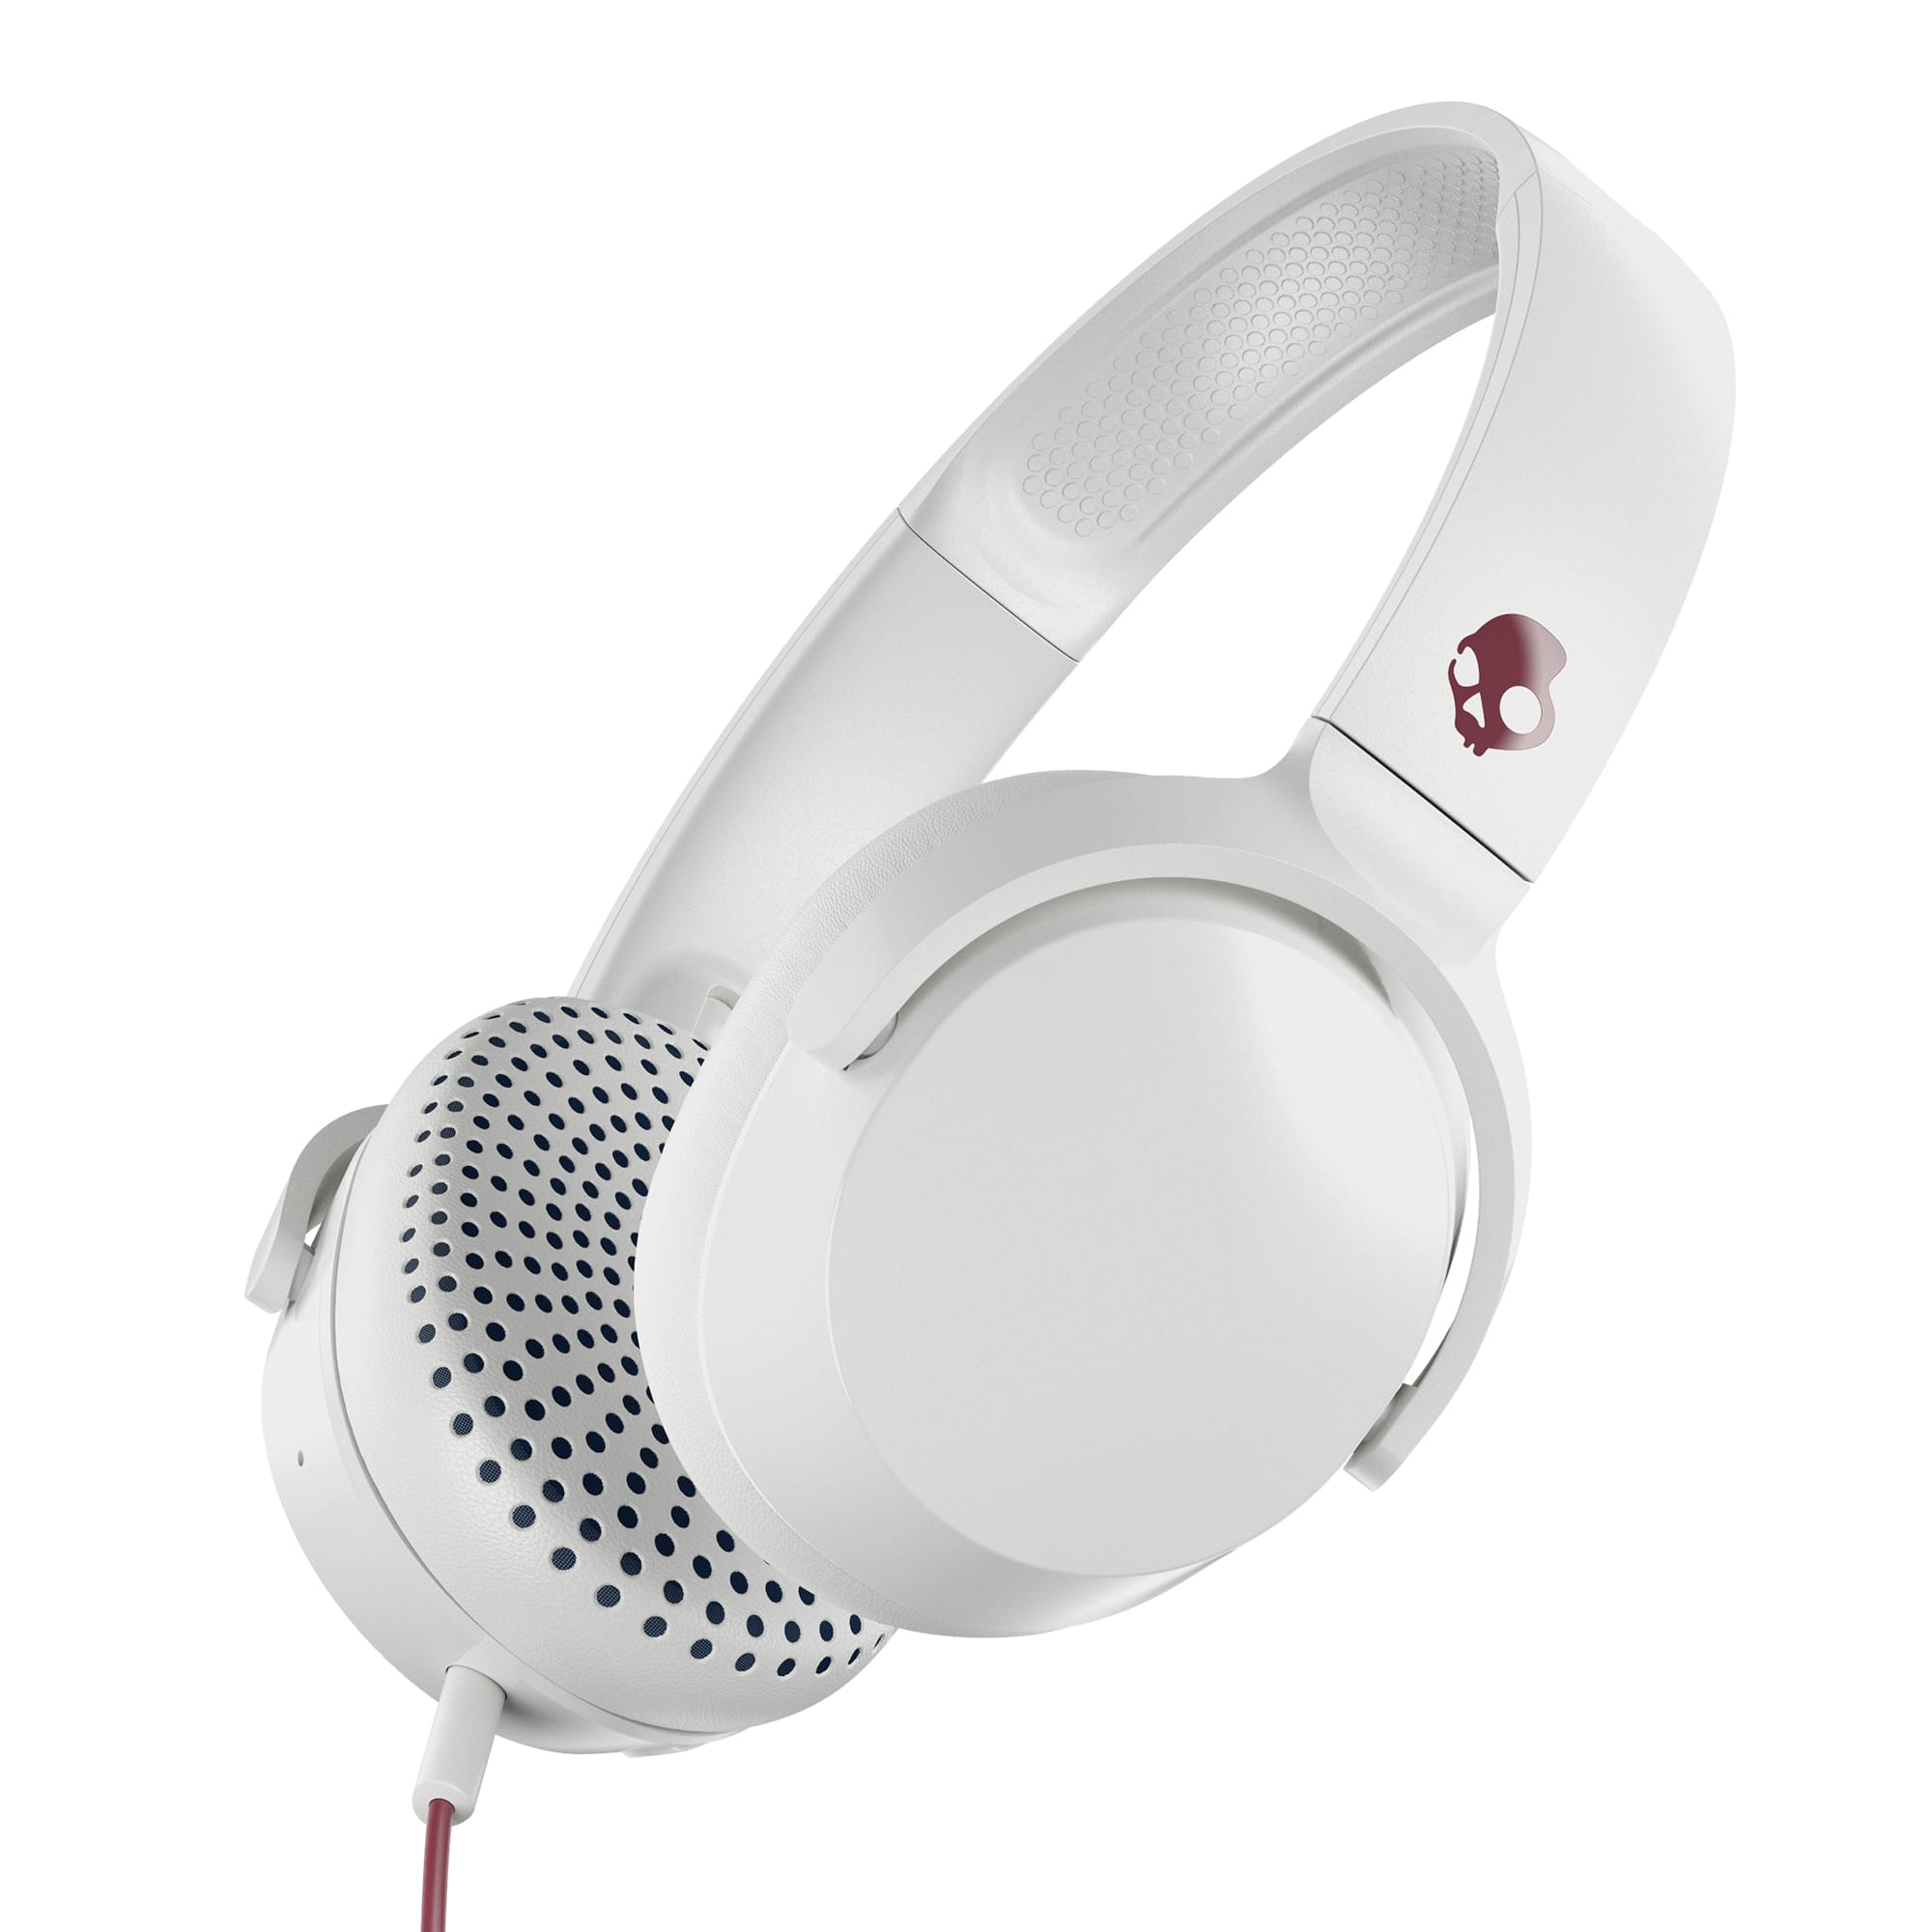 Skullcandy Riff On-Ear Durable Headphone – White/Crimson for $19